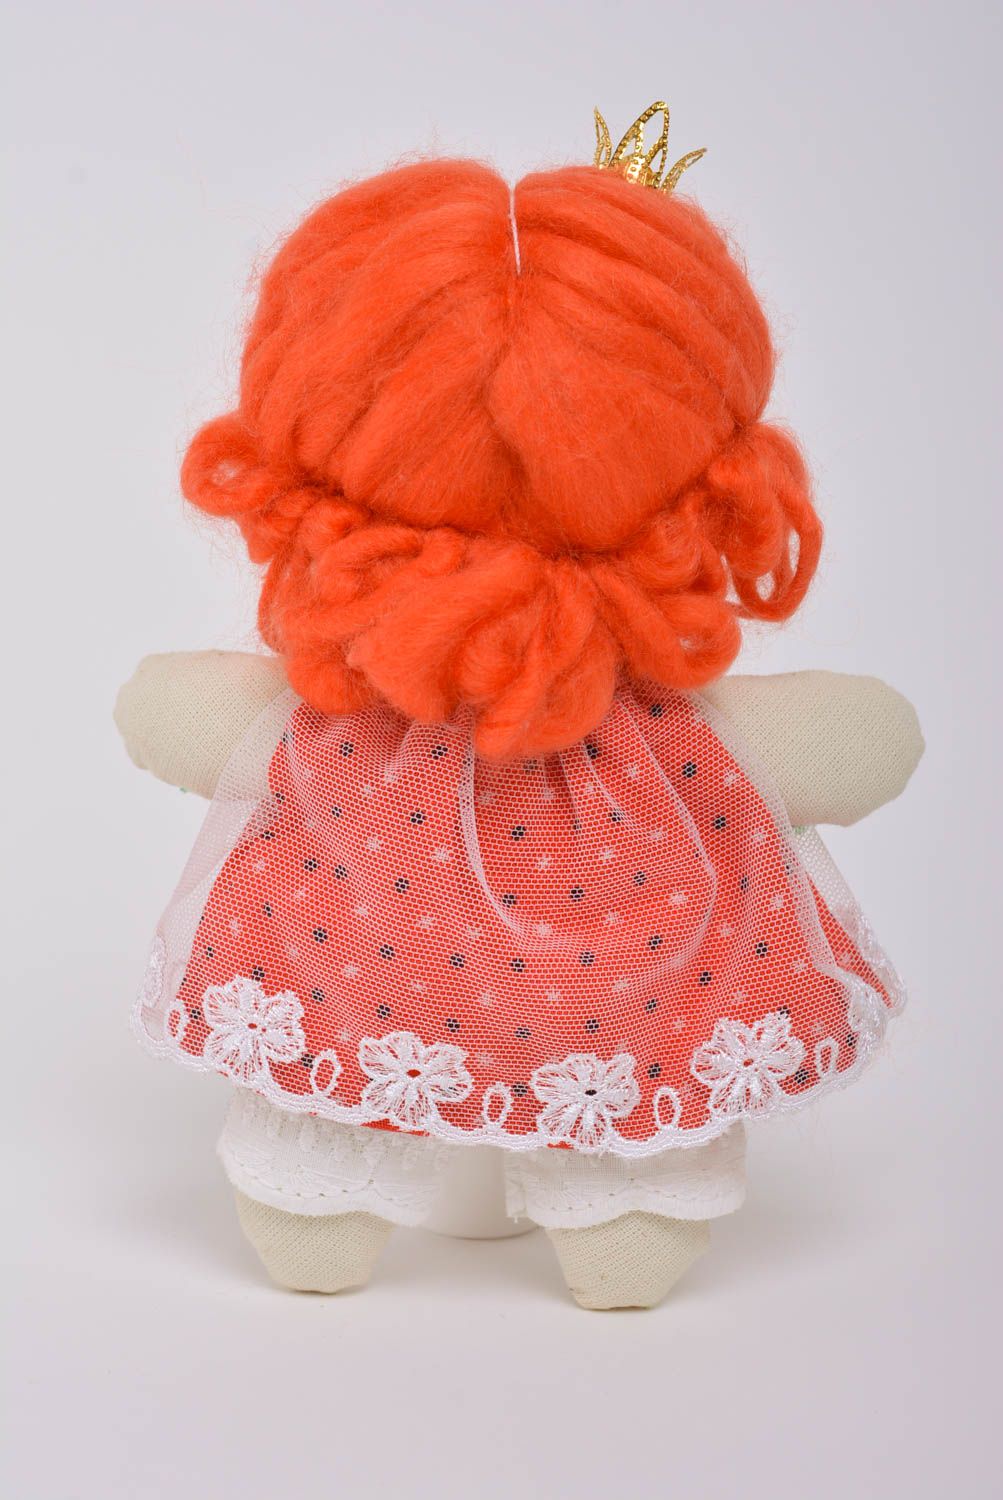 Spielzeug Puppe aus Stoff nettes Mädchen Prinzessin mit roten Haaren handmade foto 3